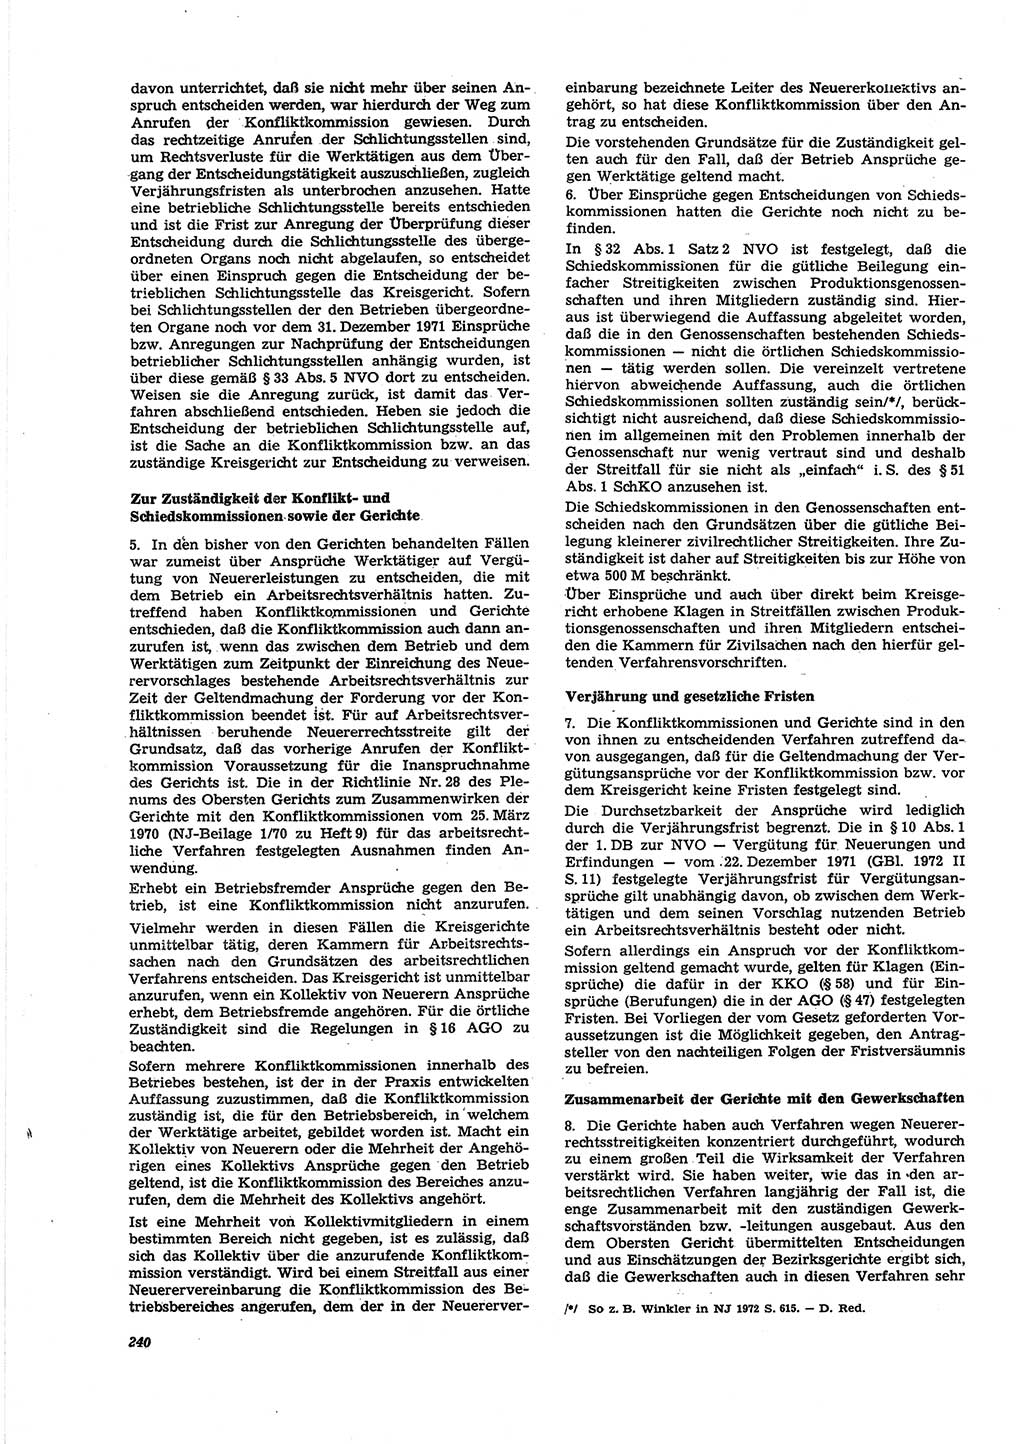 Neue Justiz (NJ), Zeitschrift für Recht und Rechtswissenschaft [Deutsche Demokratische Republik (DDR)], 27. Jahrgang 1973, Seite 240 (NJ DDR 1973, S. 240)